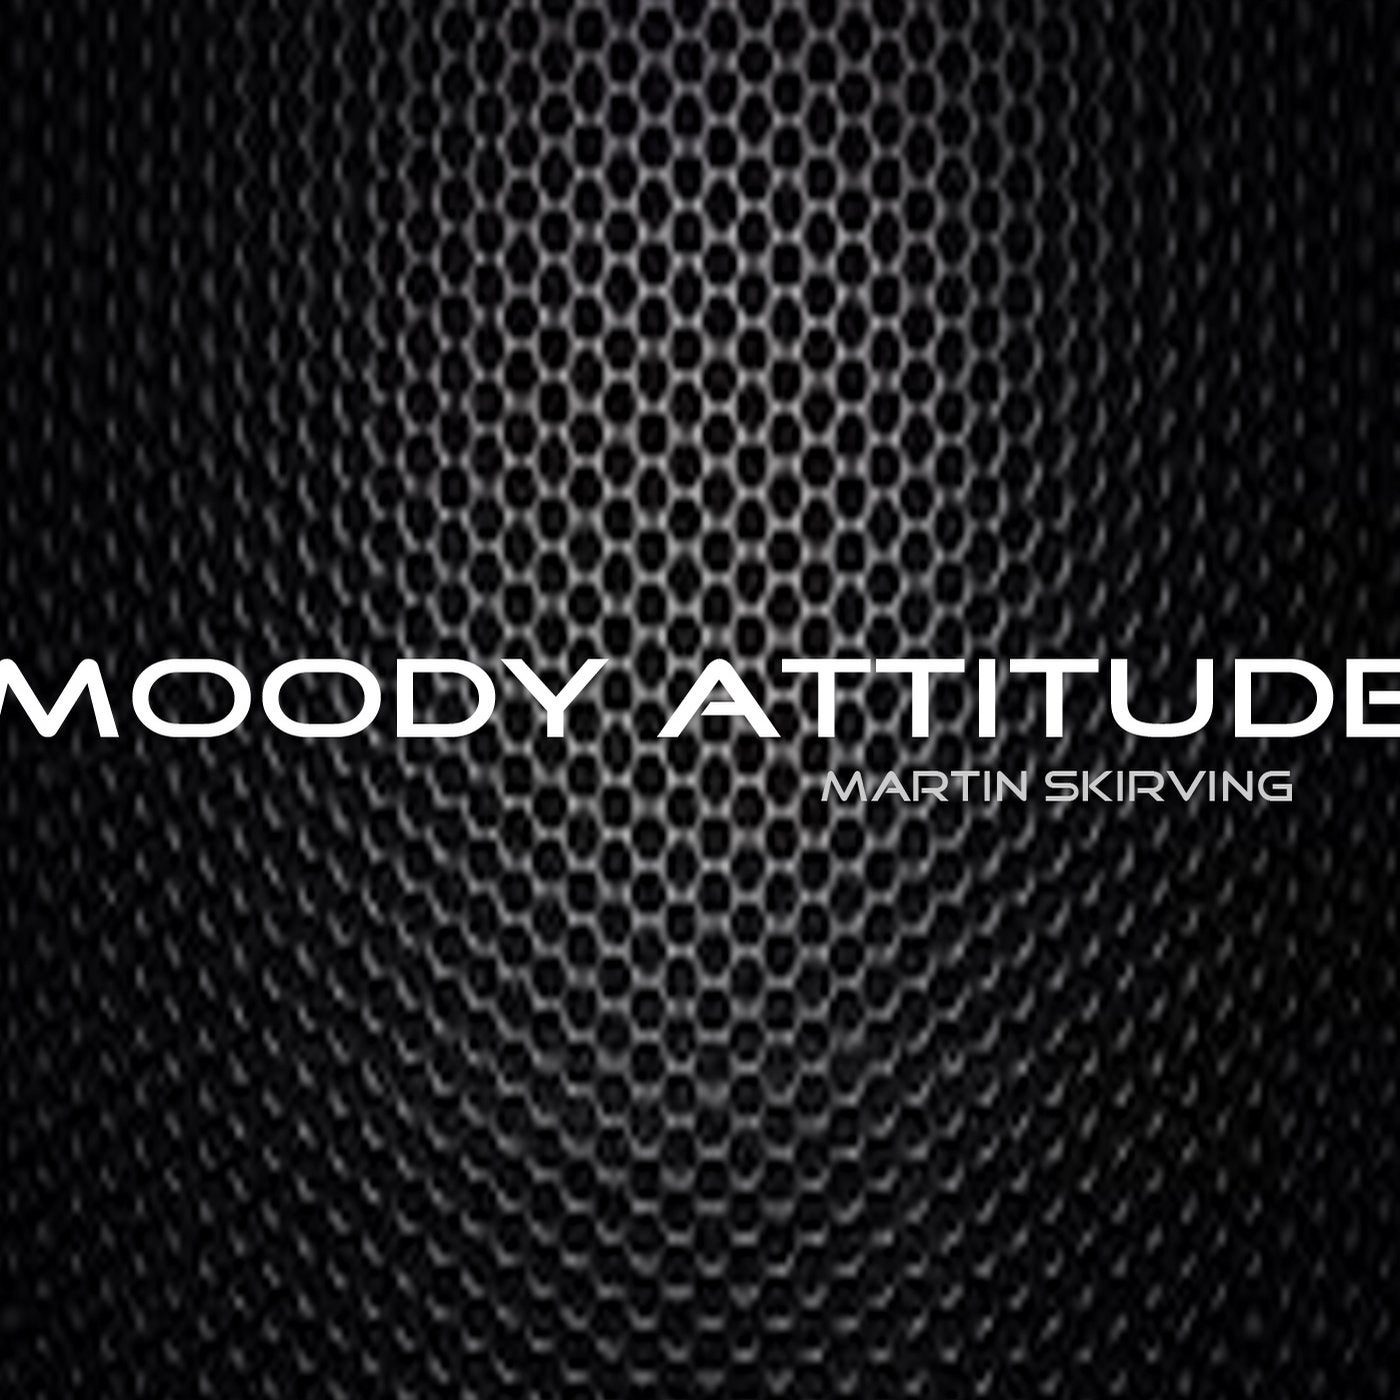 Moody Attitude